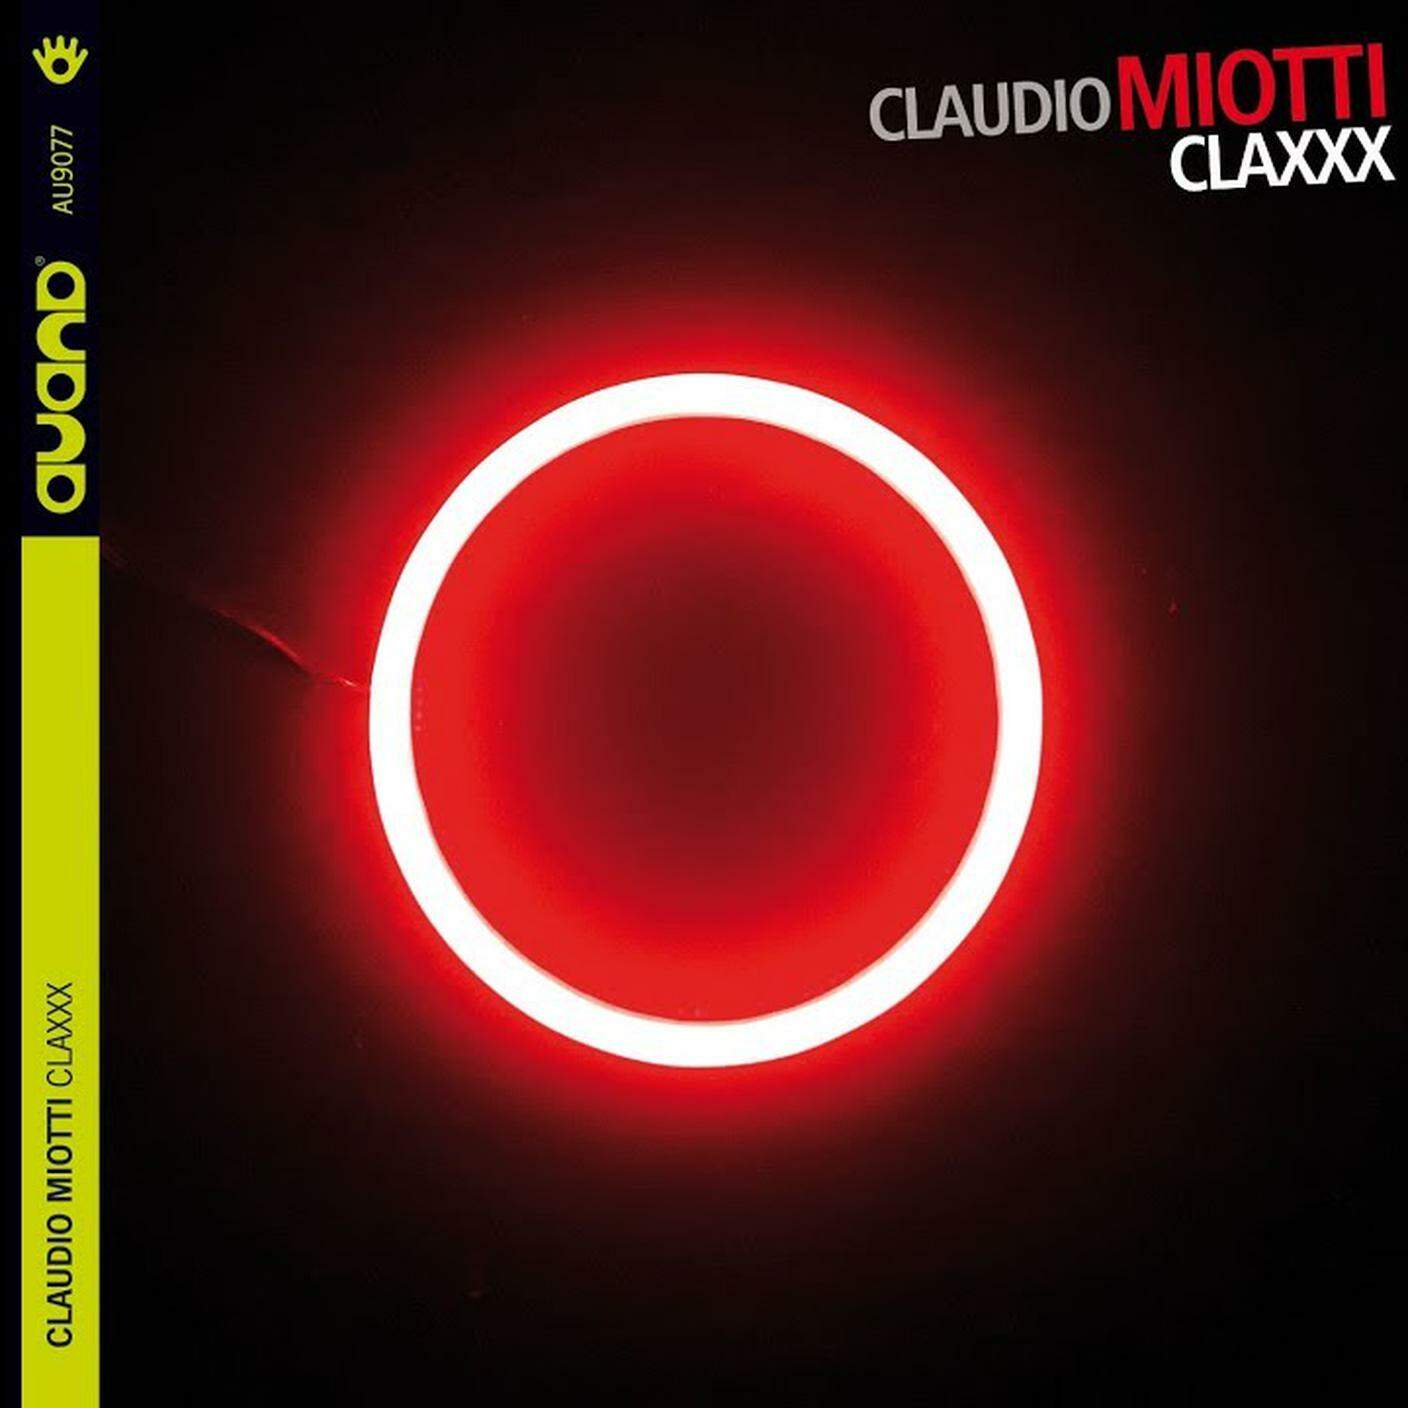 Claudio Miotti, "Claxxx", Auand (dettaglio copertina)